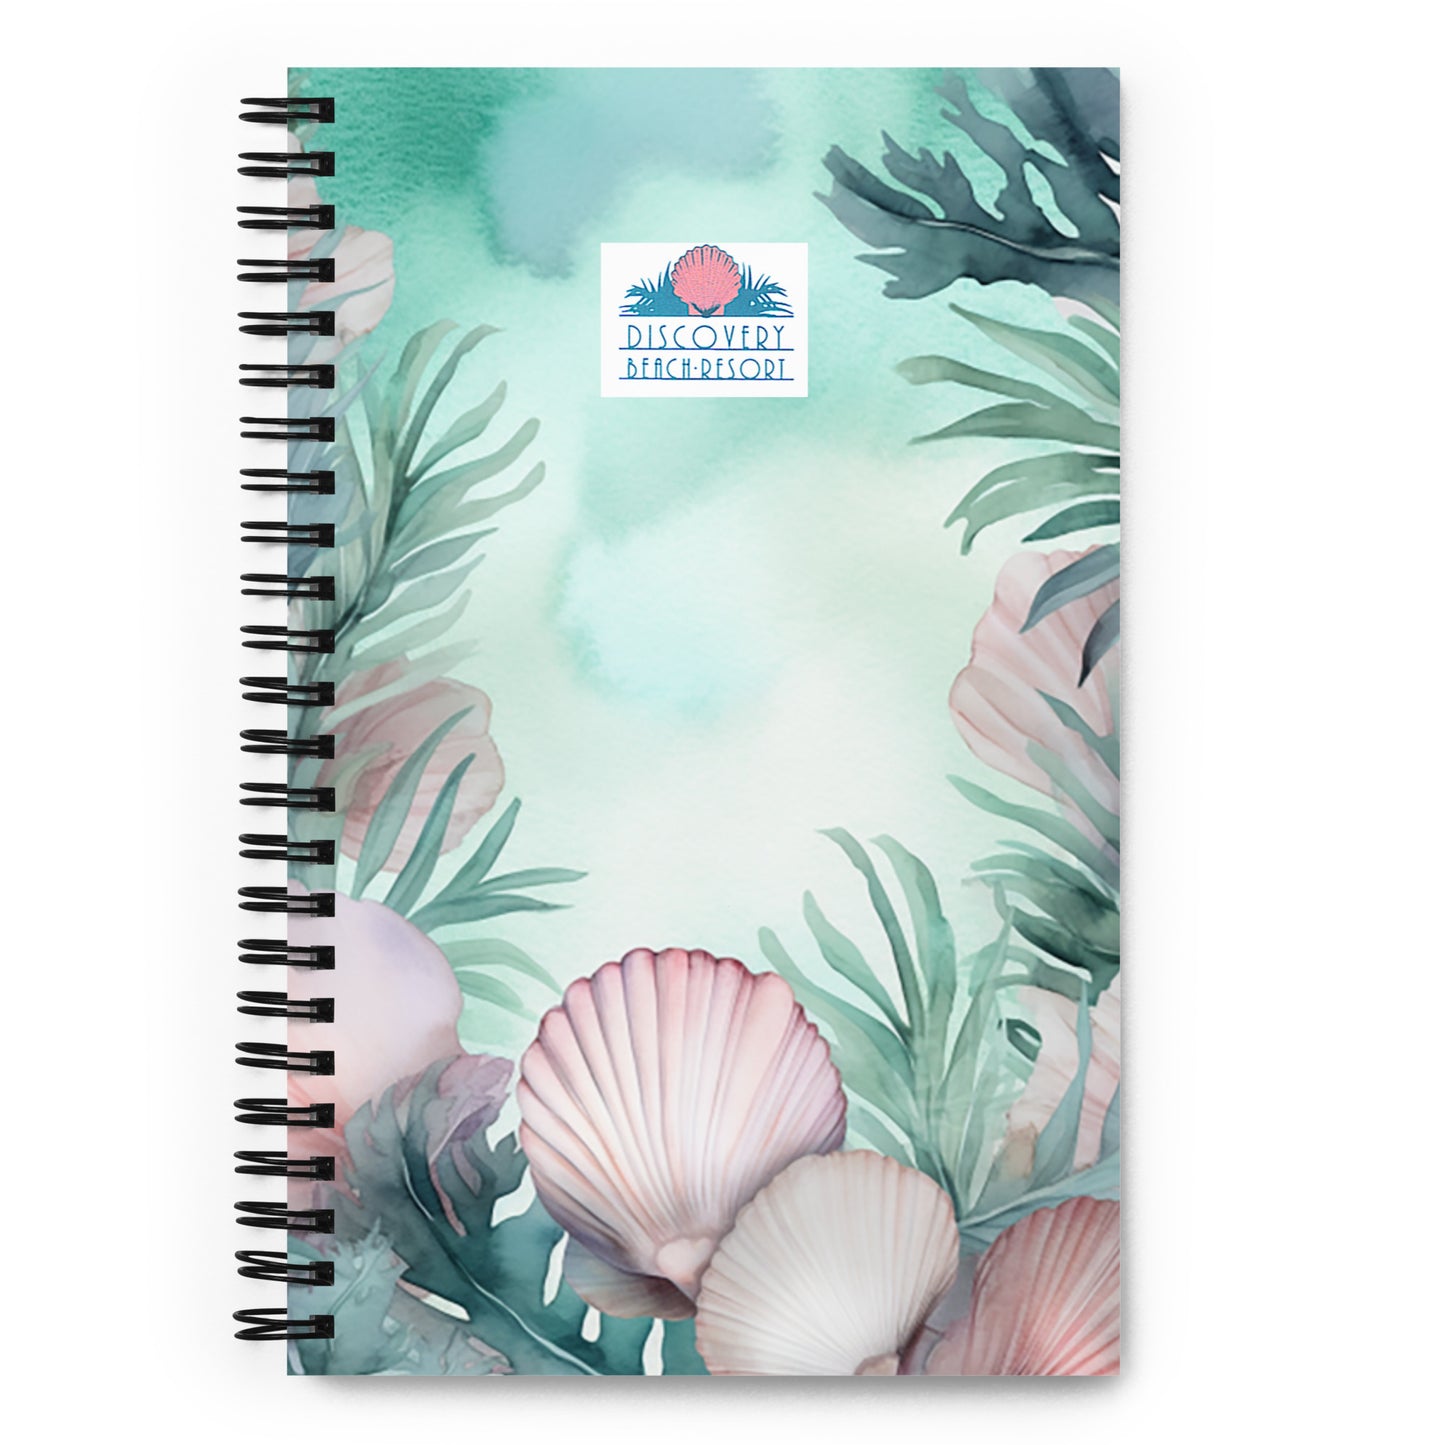 Discovery Beach Resort Spiral Notebook